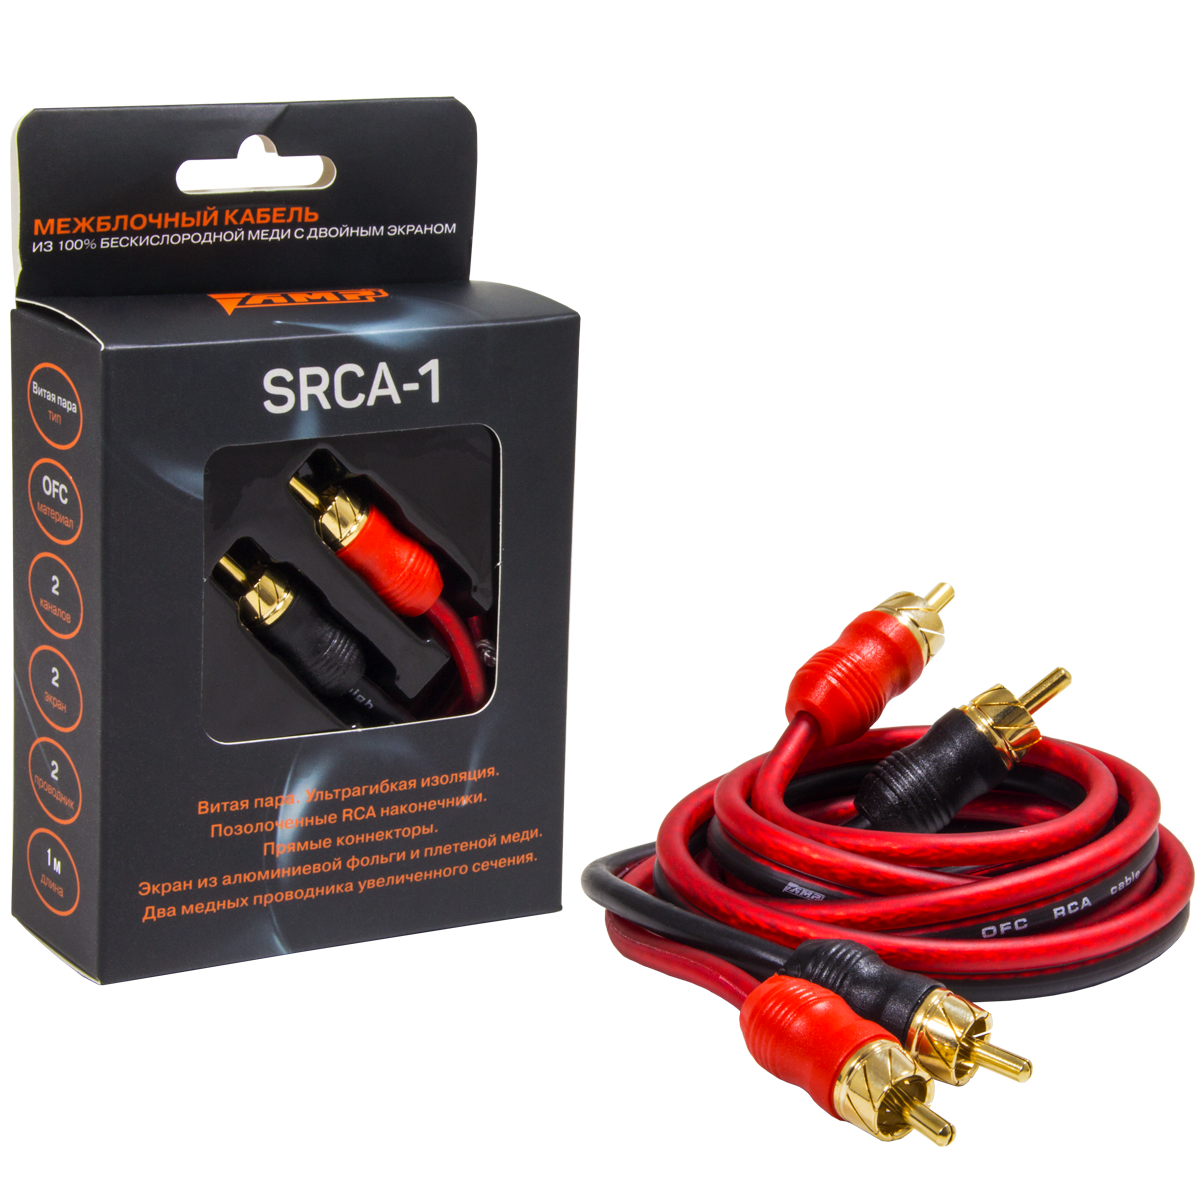 Провод соединительный AMP SRCA-1 Межблочный кабель-медь (1м) купить в интернет магазине AMPGROUP.  Провод соединительный AMP SRCA-1 Межблочный кабель-медь (1м)   цены, большой каталог, новинки.
